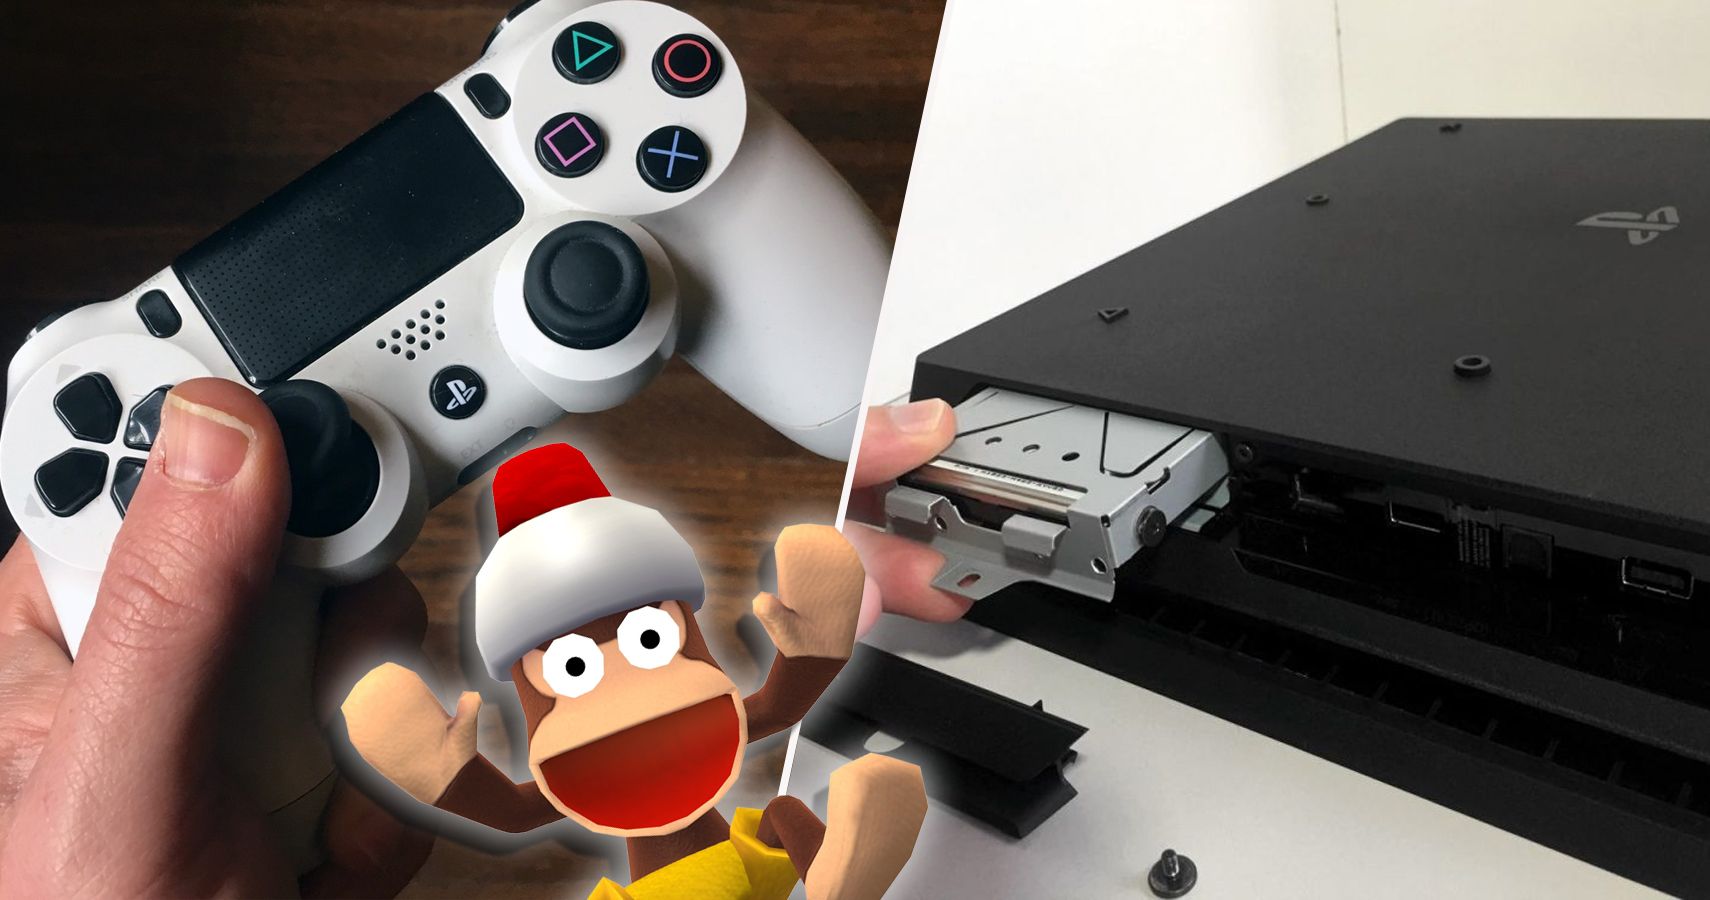 Sony PS4's camera accessory will boast Kinect-like voice controls